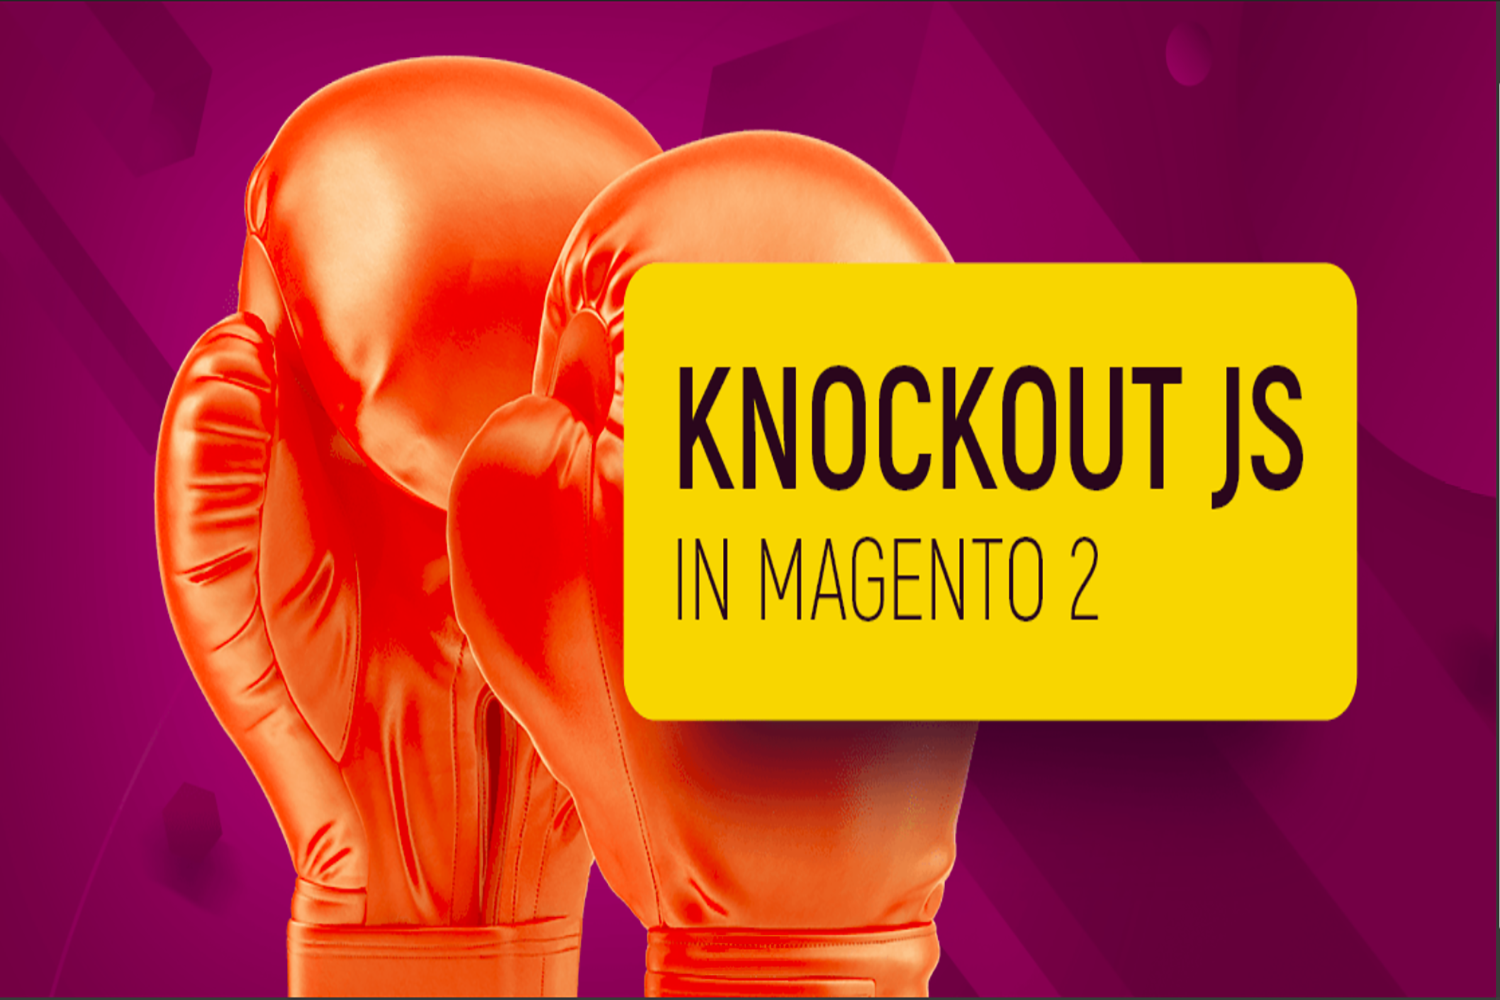 Magento 2 knockout js